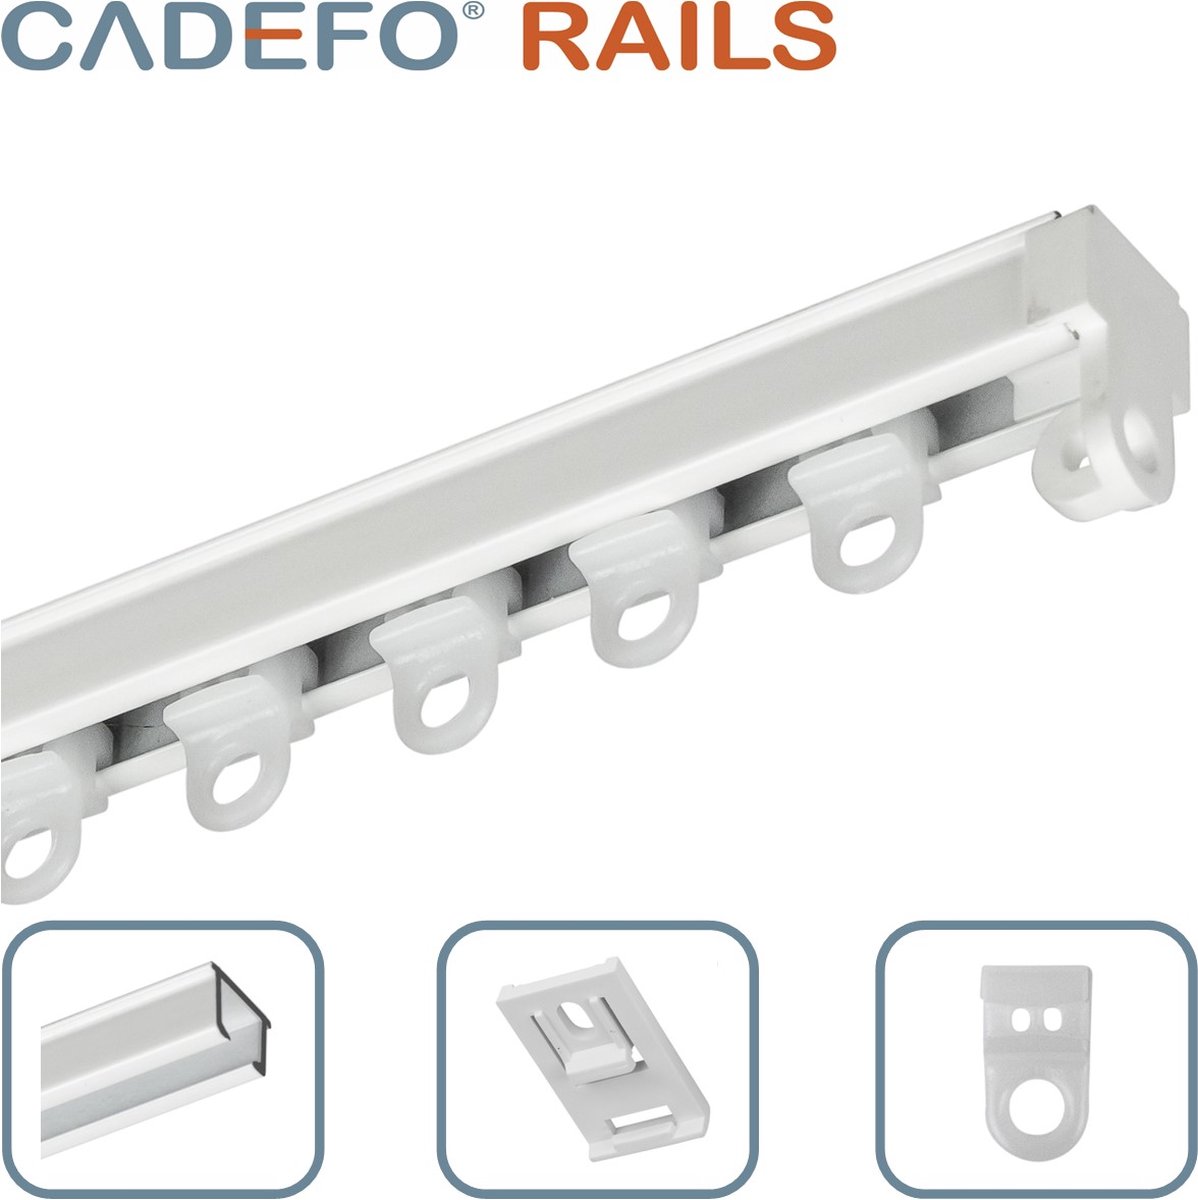 CADEFO RAILS (501 - 550 cm) Gordijnrails - Compleet op maat! - UIT 1 STUK - Leverbaar tot 6 meter - Plafondbevestiging - Lengte 523 cm